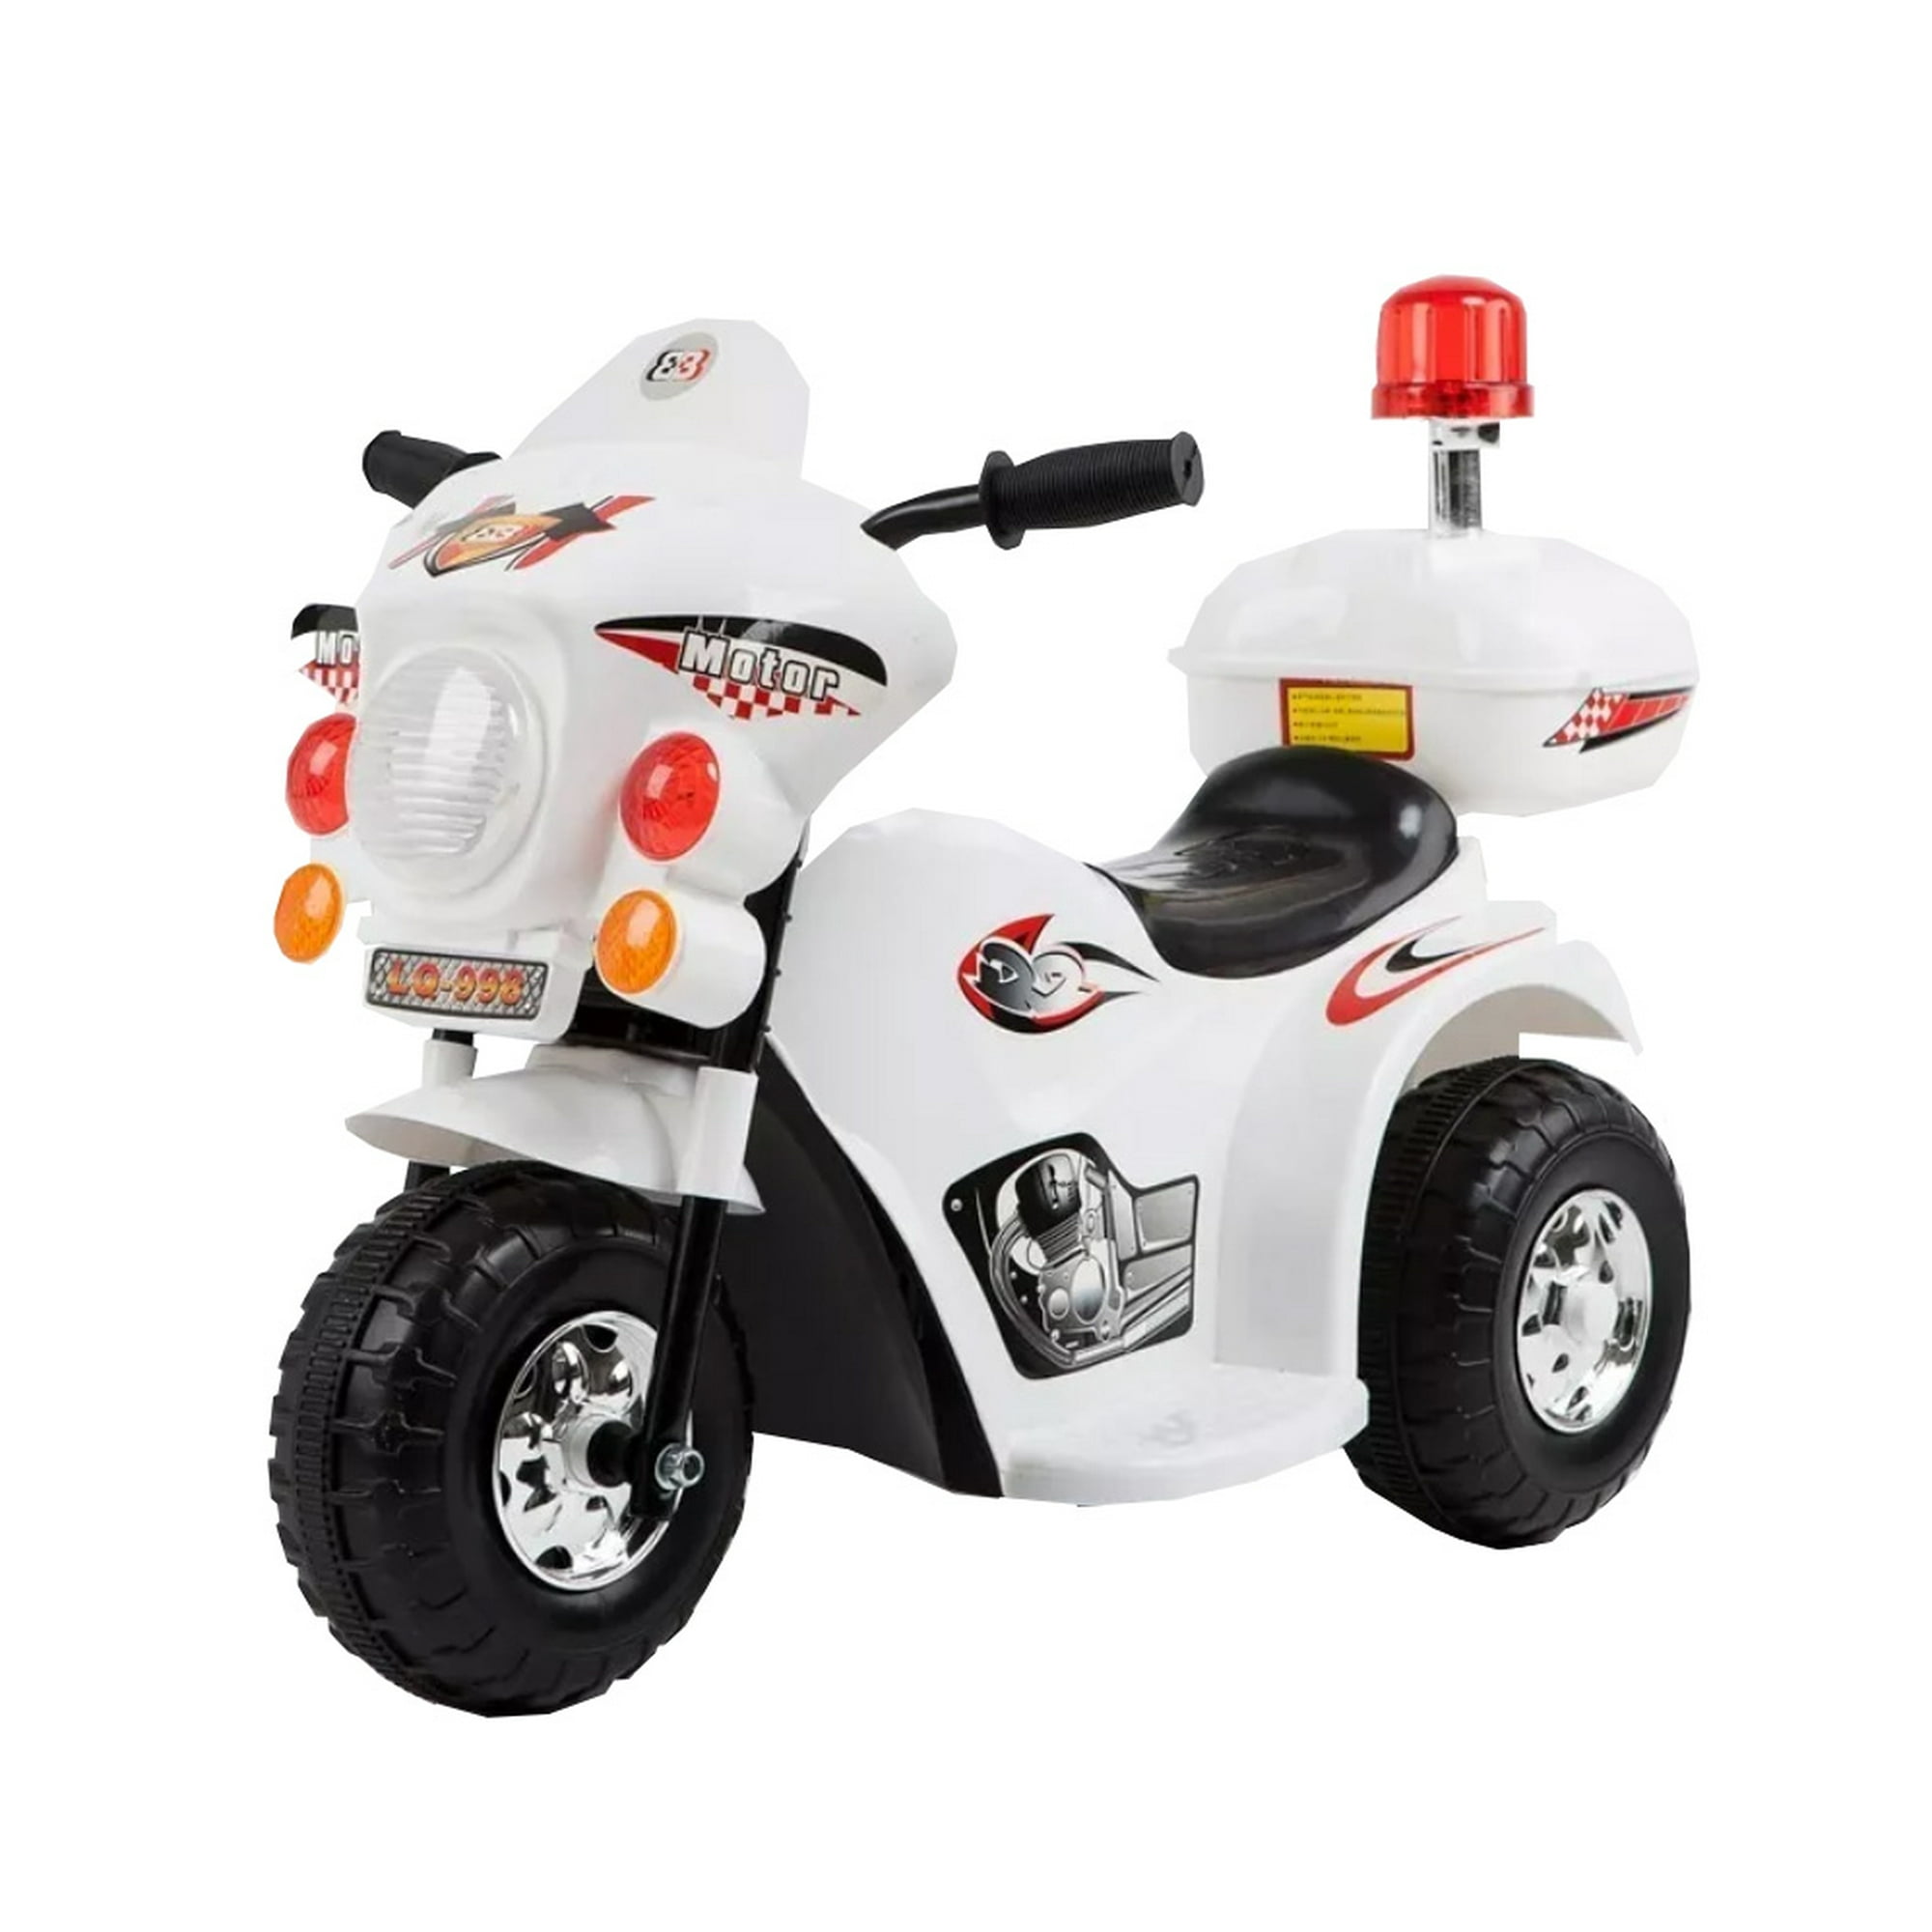 Motocicleta Electrica 6V Moto Policia Para Niños De 2 3 Años Con